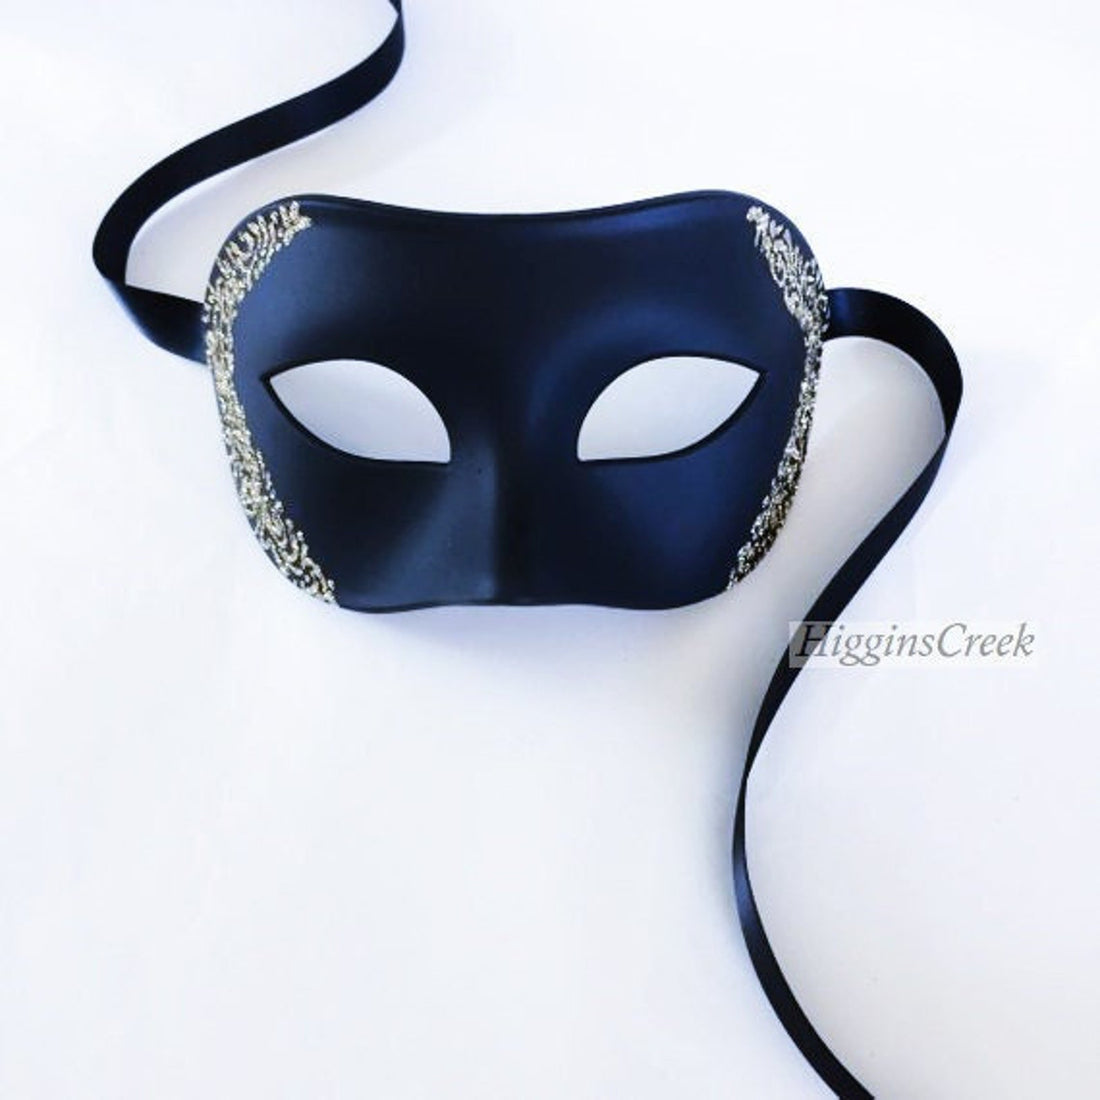 Gold Shimmer Mask - Black